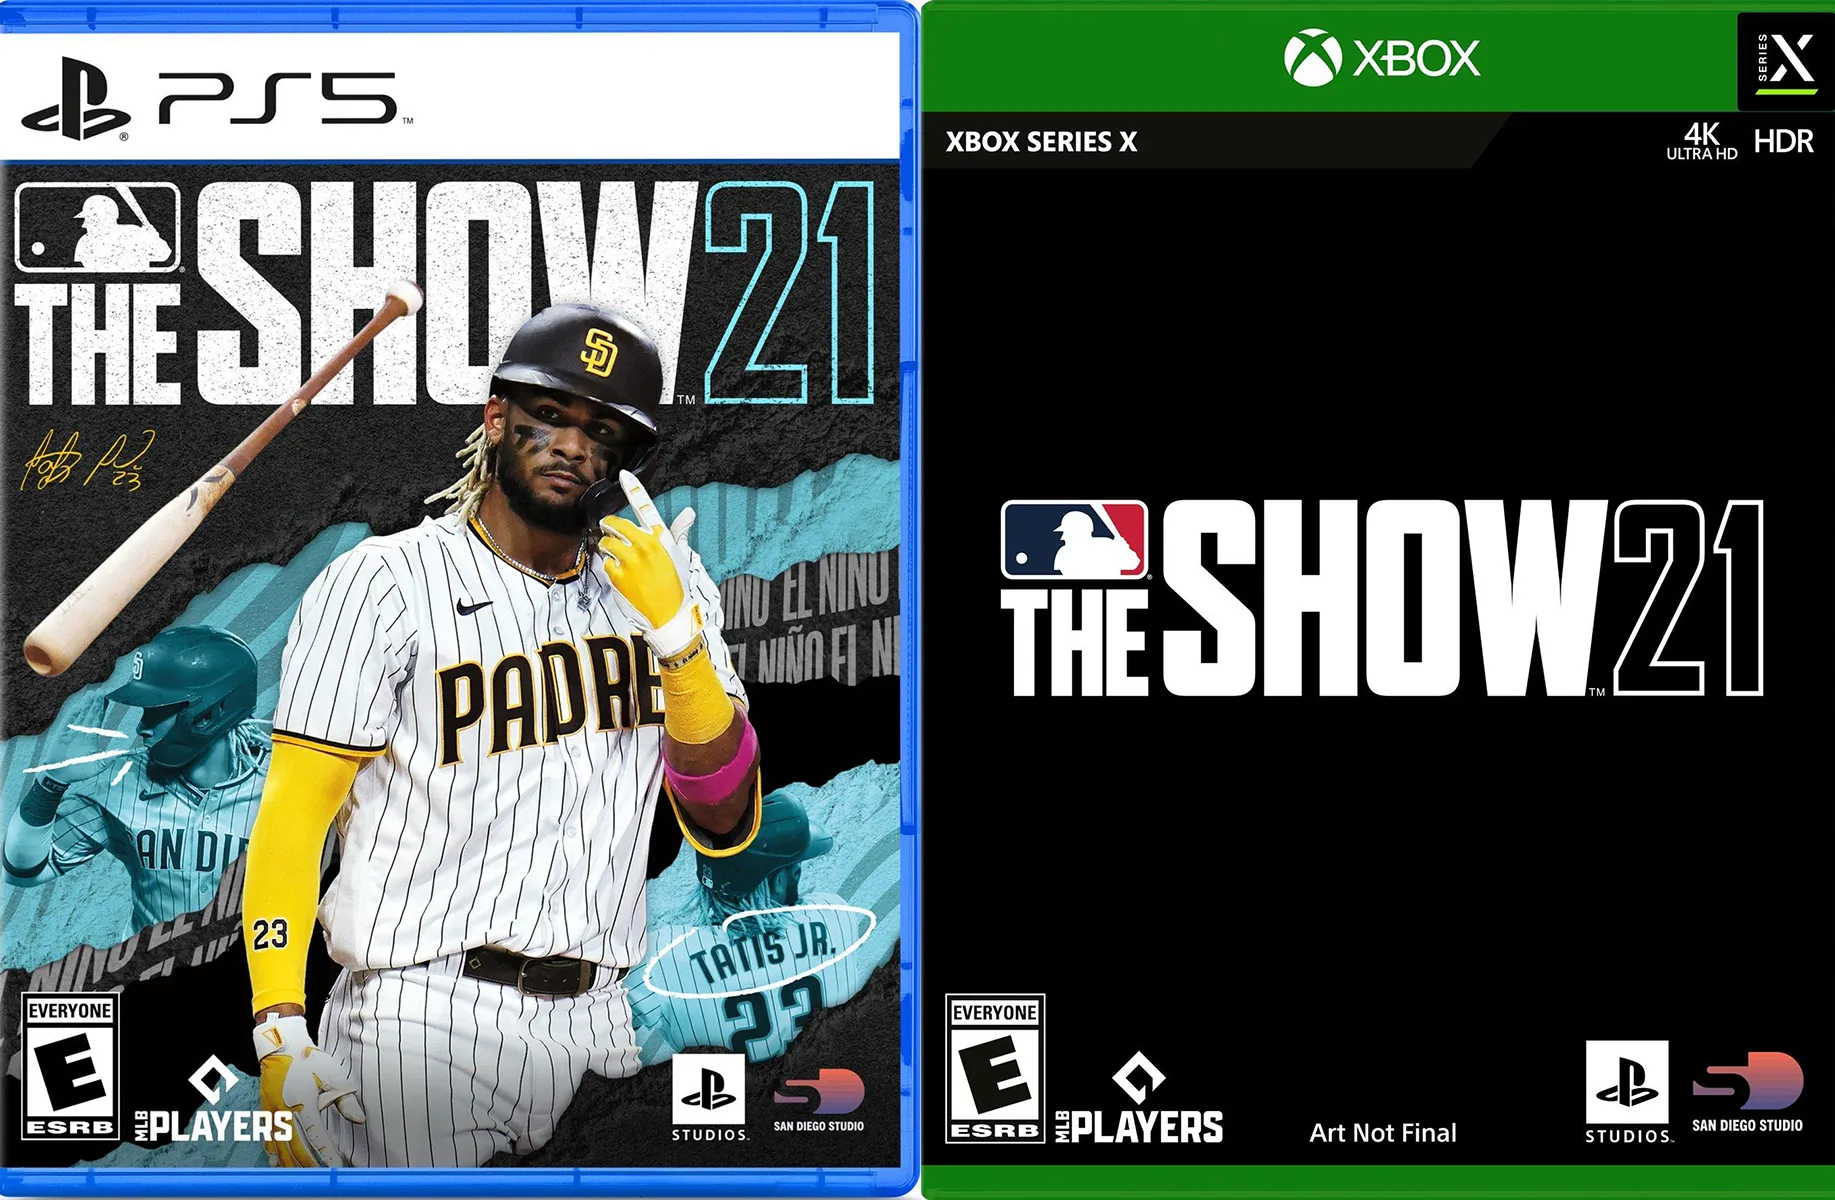 MLB The Show 14  Brett Lawrie Variant Cover  PS3 NEW  eBay